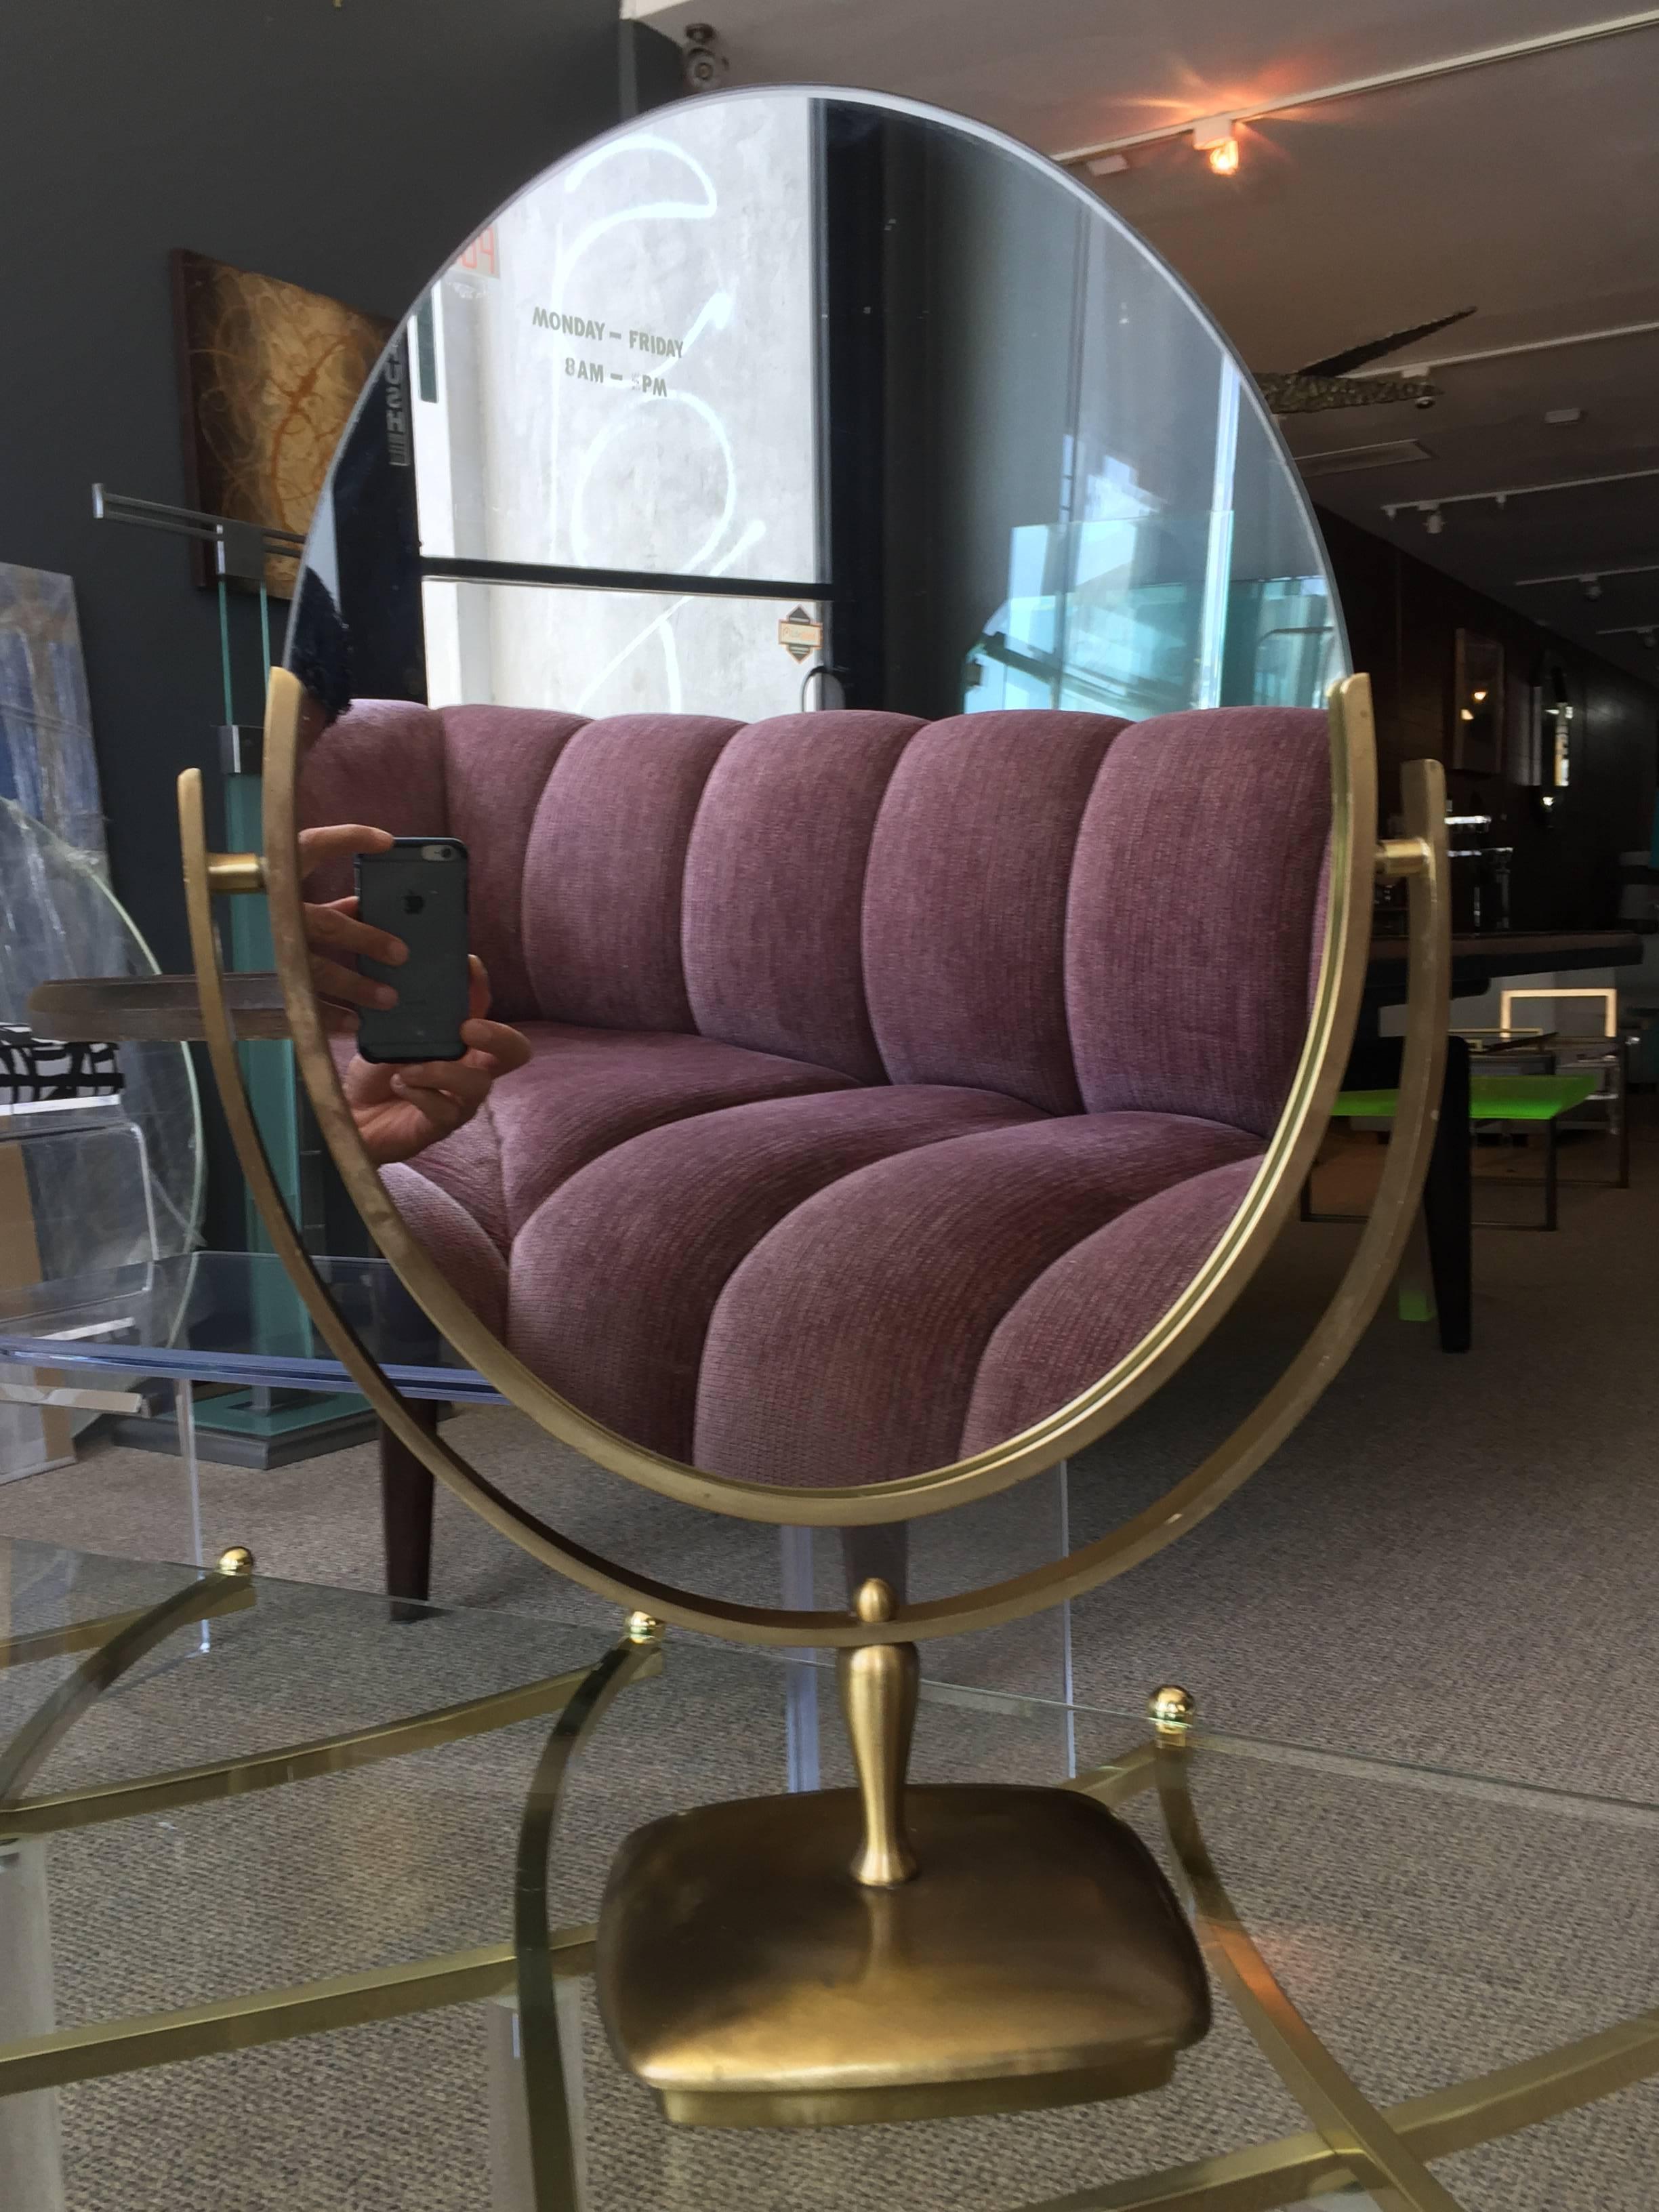 Großer und schöner ovaler Spiegel, entworfen und hergestellt von Charles Hollis Jones in den 1960er Jahren.
Der Spiegel hat einen Rahmen und einen Sockel aus antikem Messing. Der Spiegel ist doppelseitig und kann umgedreht werden, um auf beiden